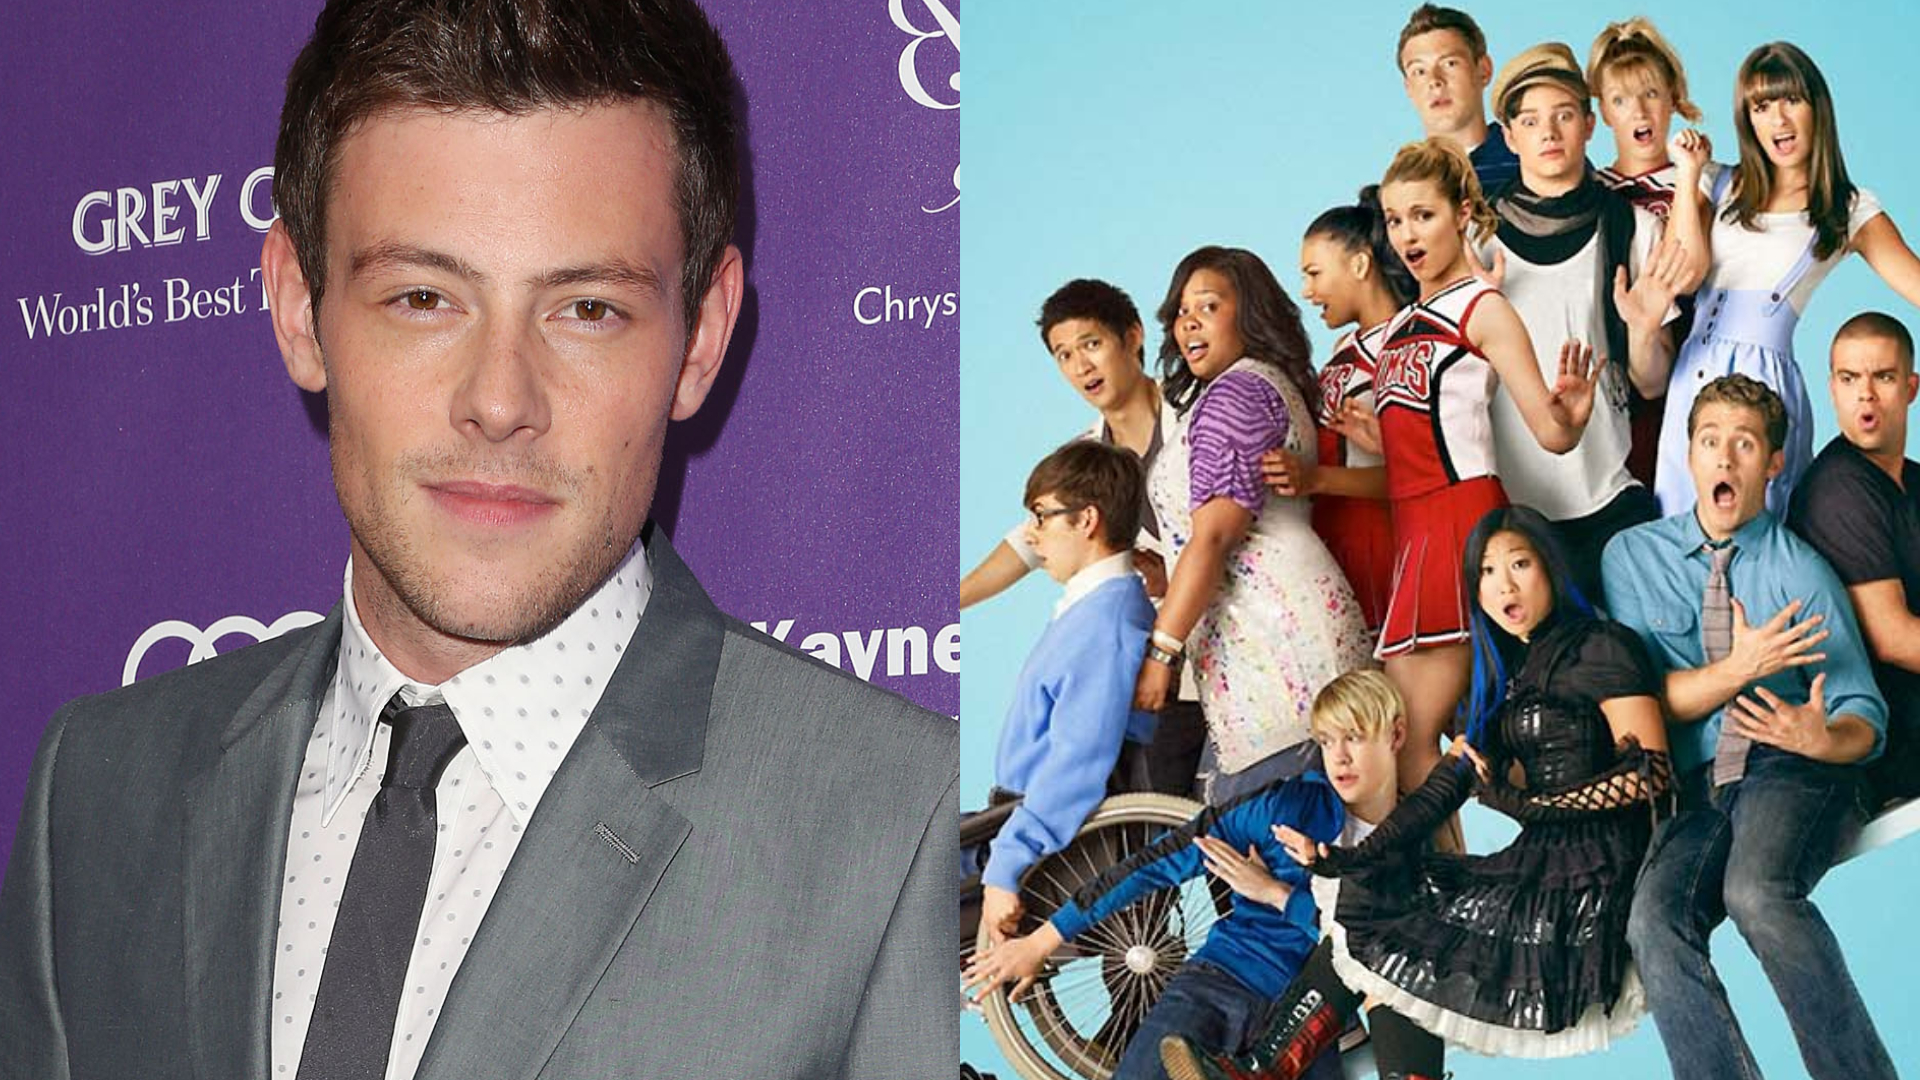 The Price of Glee: Cabeleireiro diz que membro do elenco incentivou Cory Monteith a beber antes de overdose